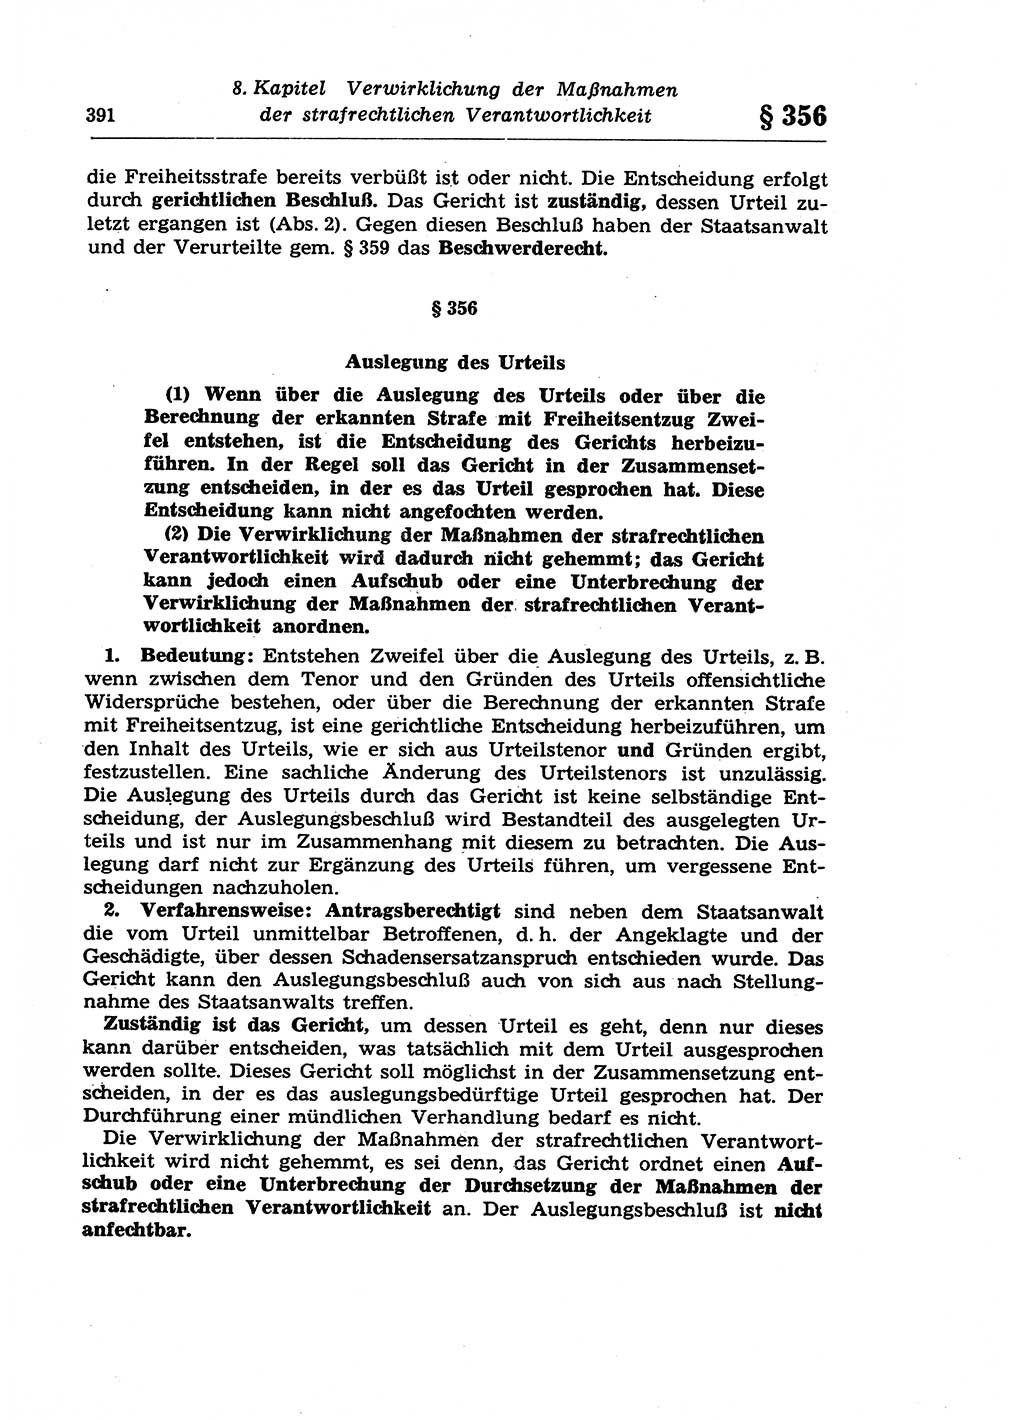 Strafprozeßrecht der DDR (Deutsche Demokratische Republik), Lehrkommentar zur Strafprozeßordnung (StPO) 1968, Seite 391 (Strafprozeßr. DDR Lehrkomm. StPO 19688, S. 391)